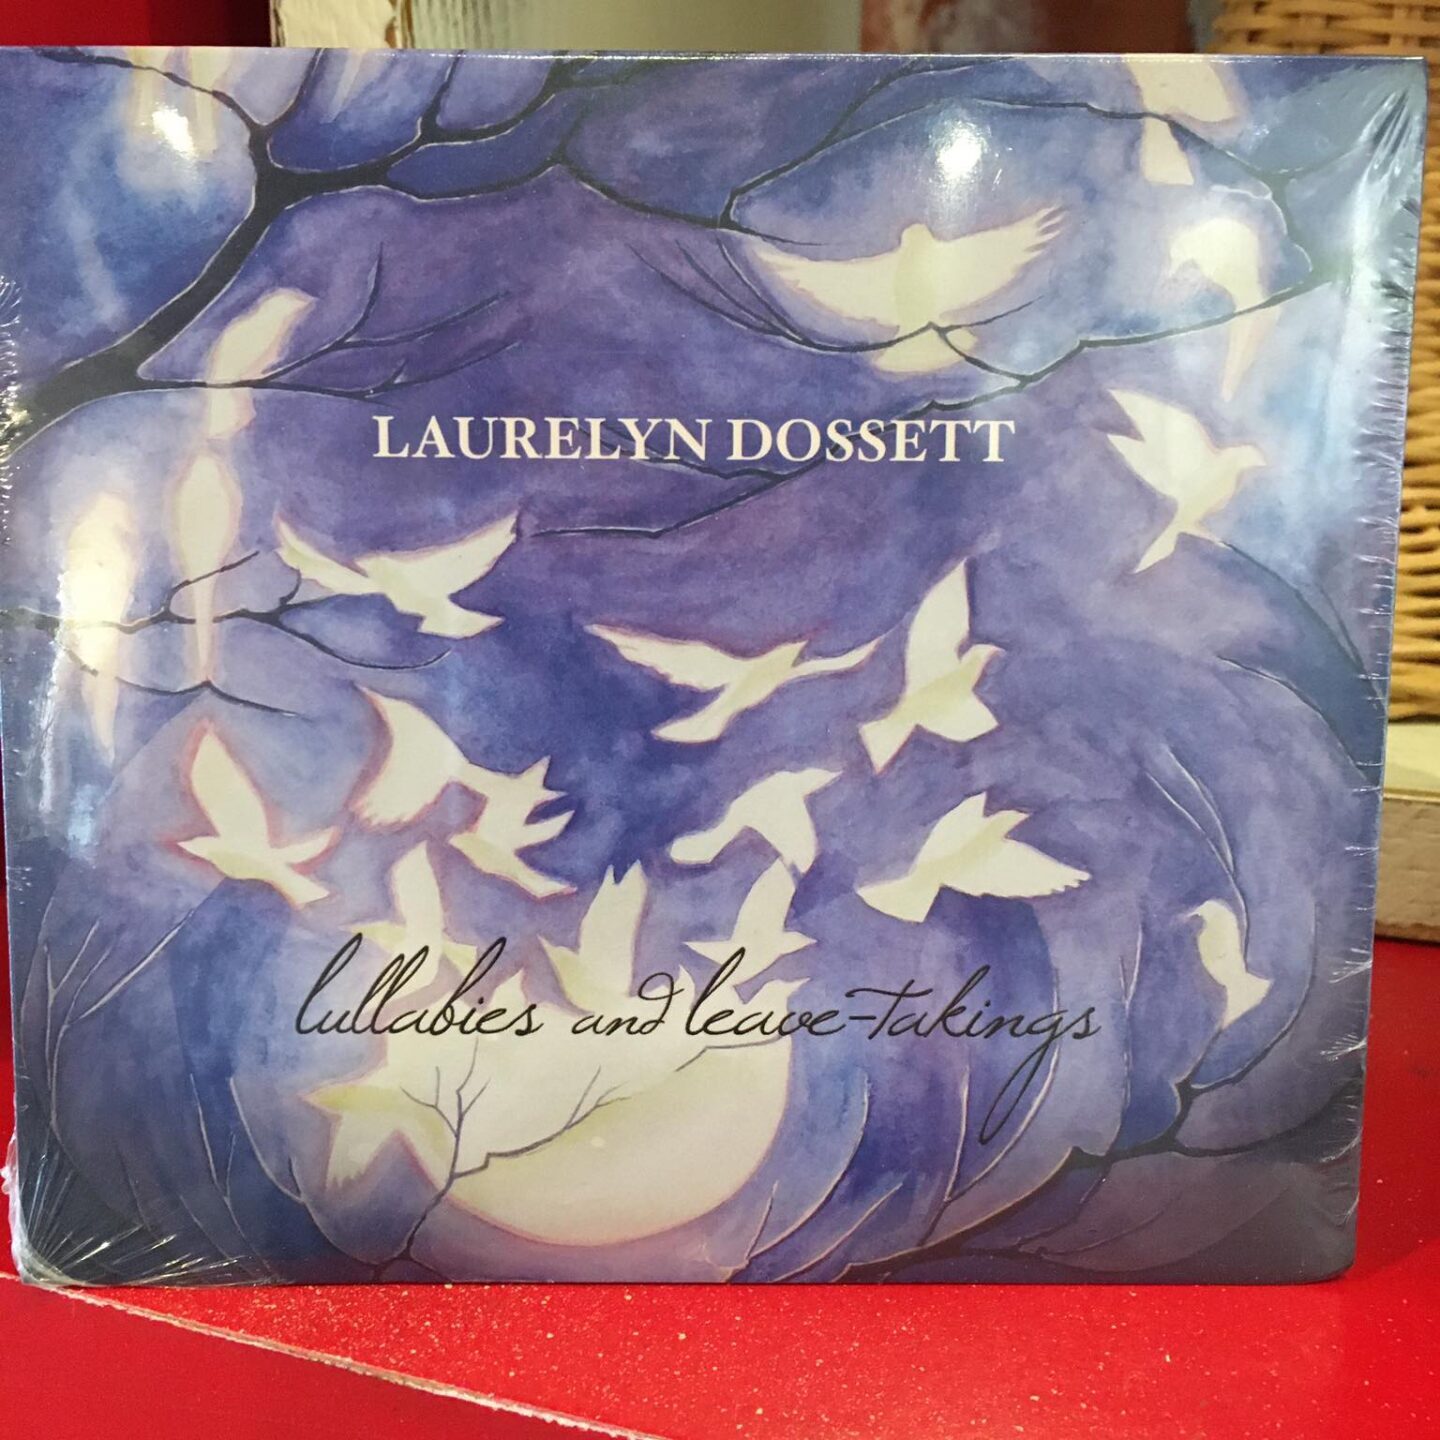 Laurelyn Dossett: Musician